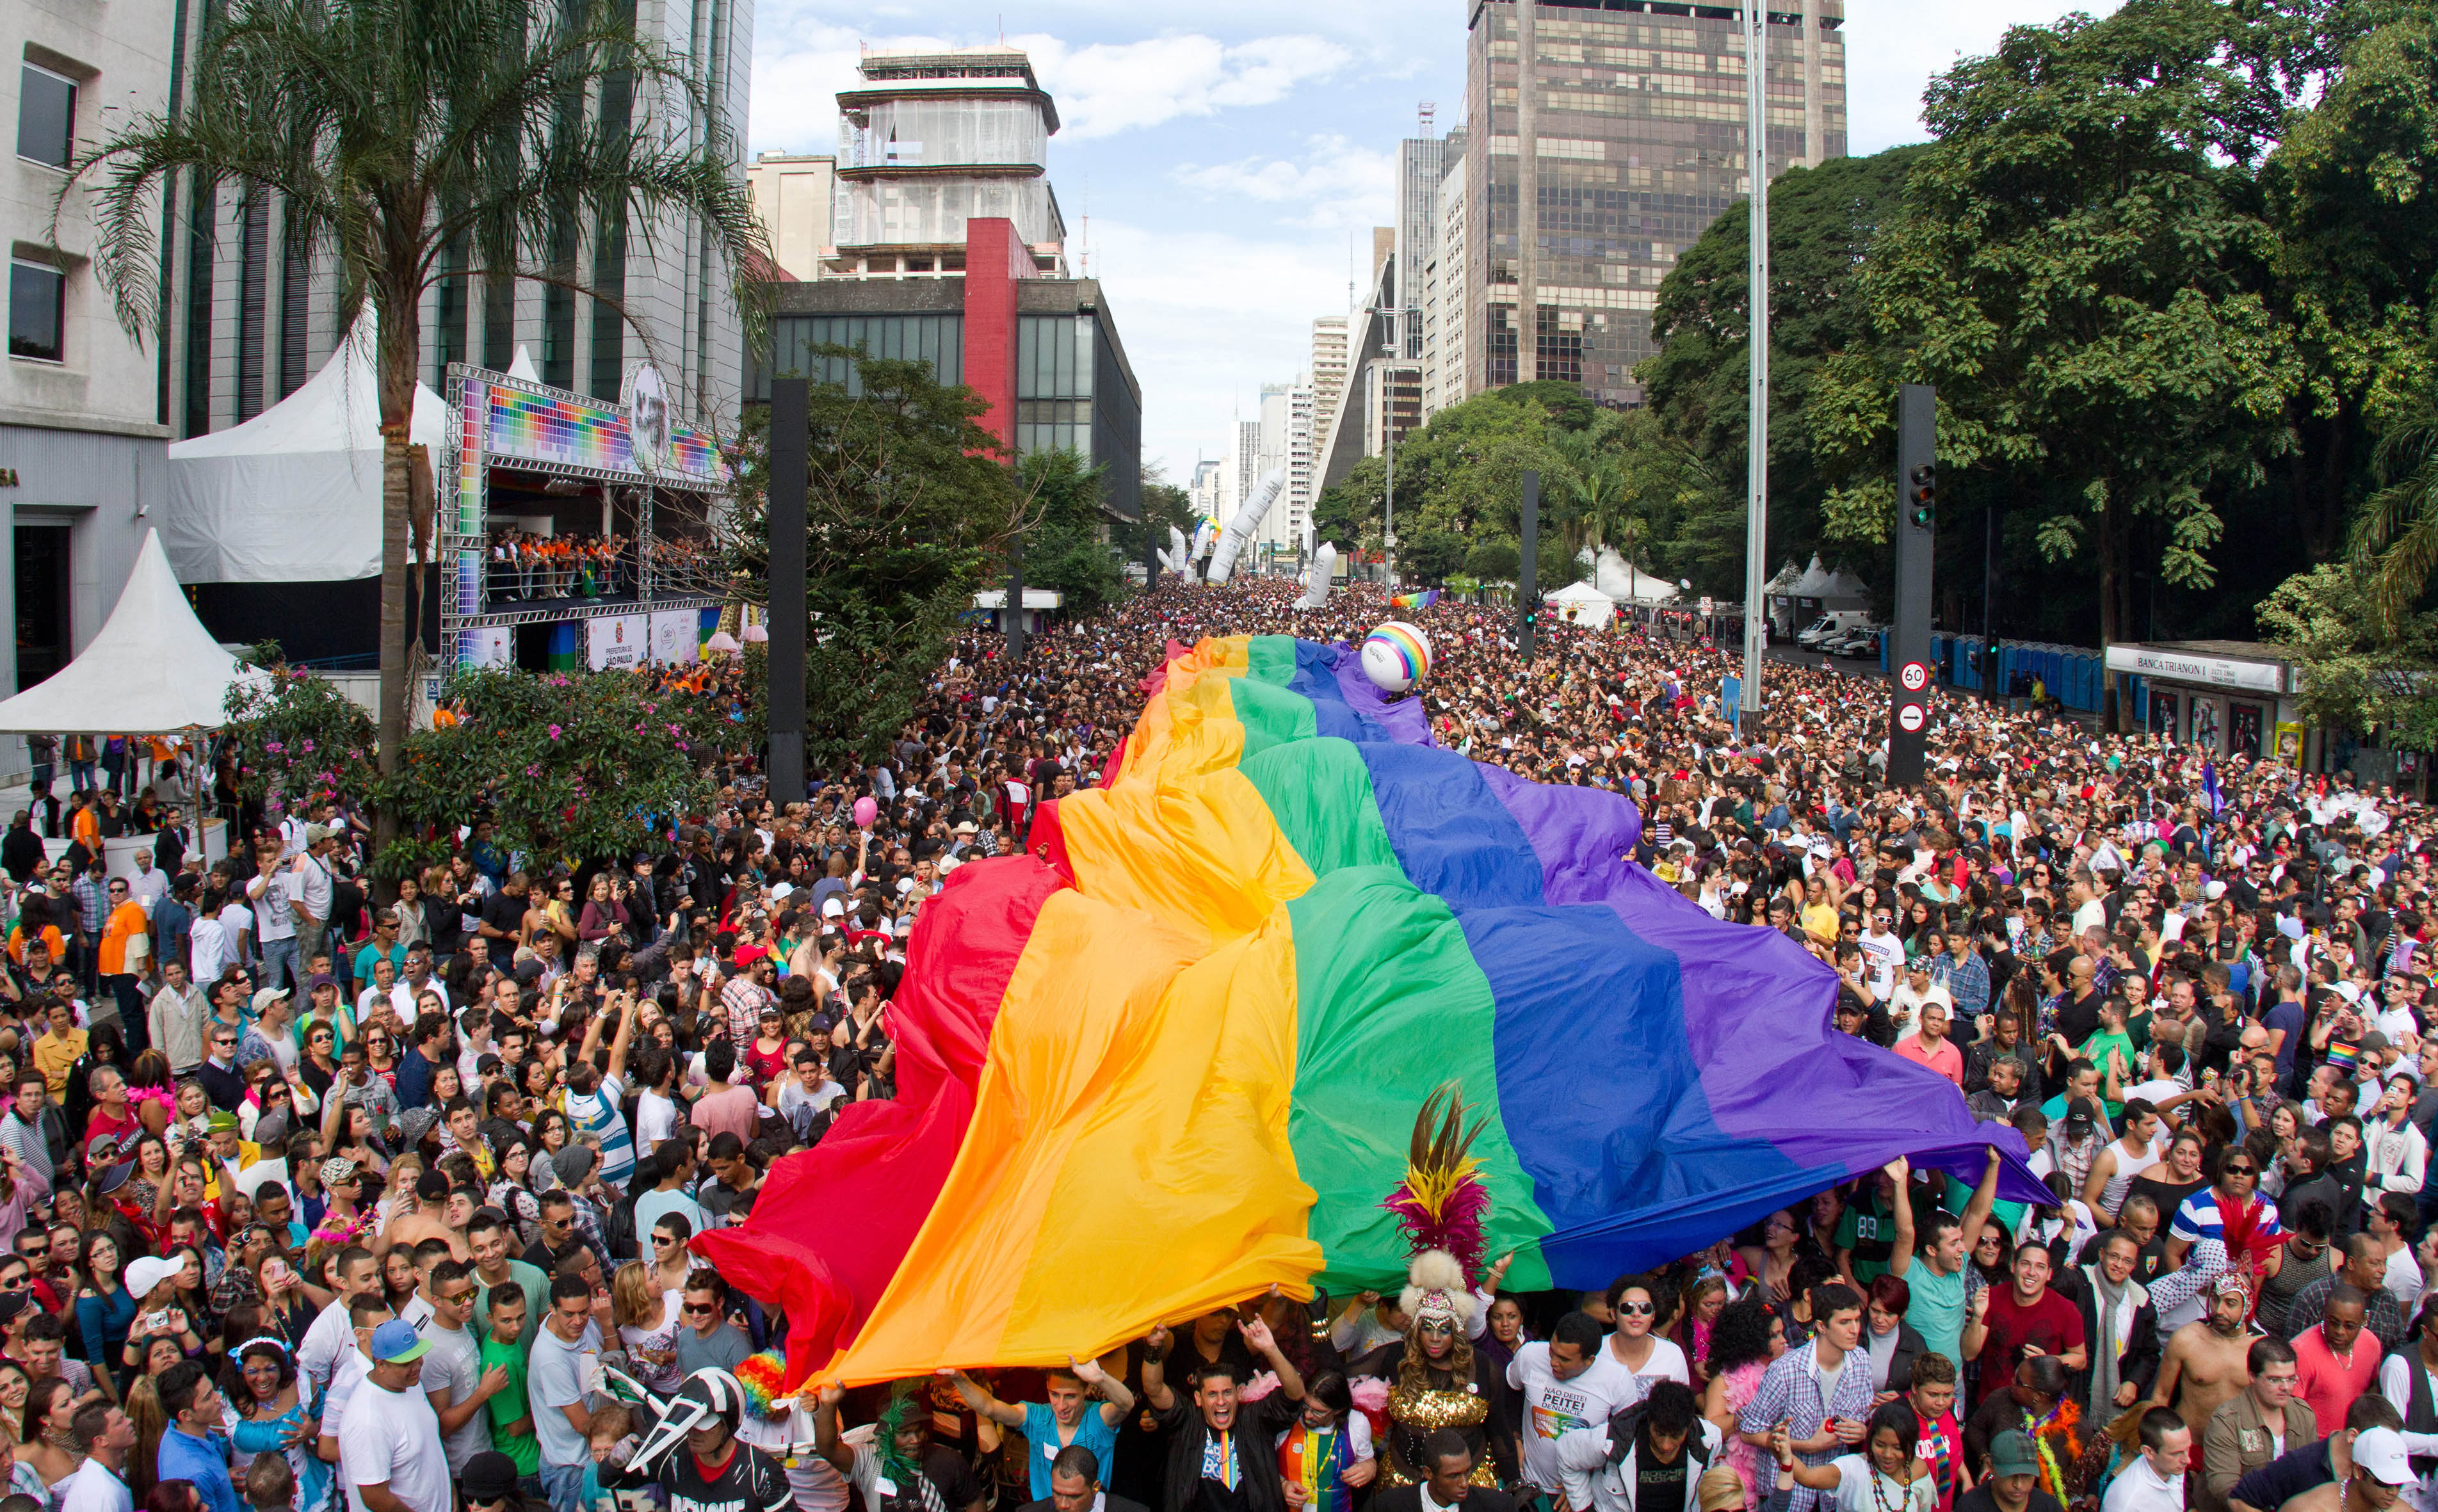 São Paulo LGBT Pride Parade 2020 CANCELLED / 2021 Announced image